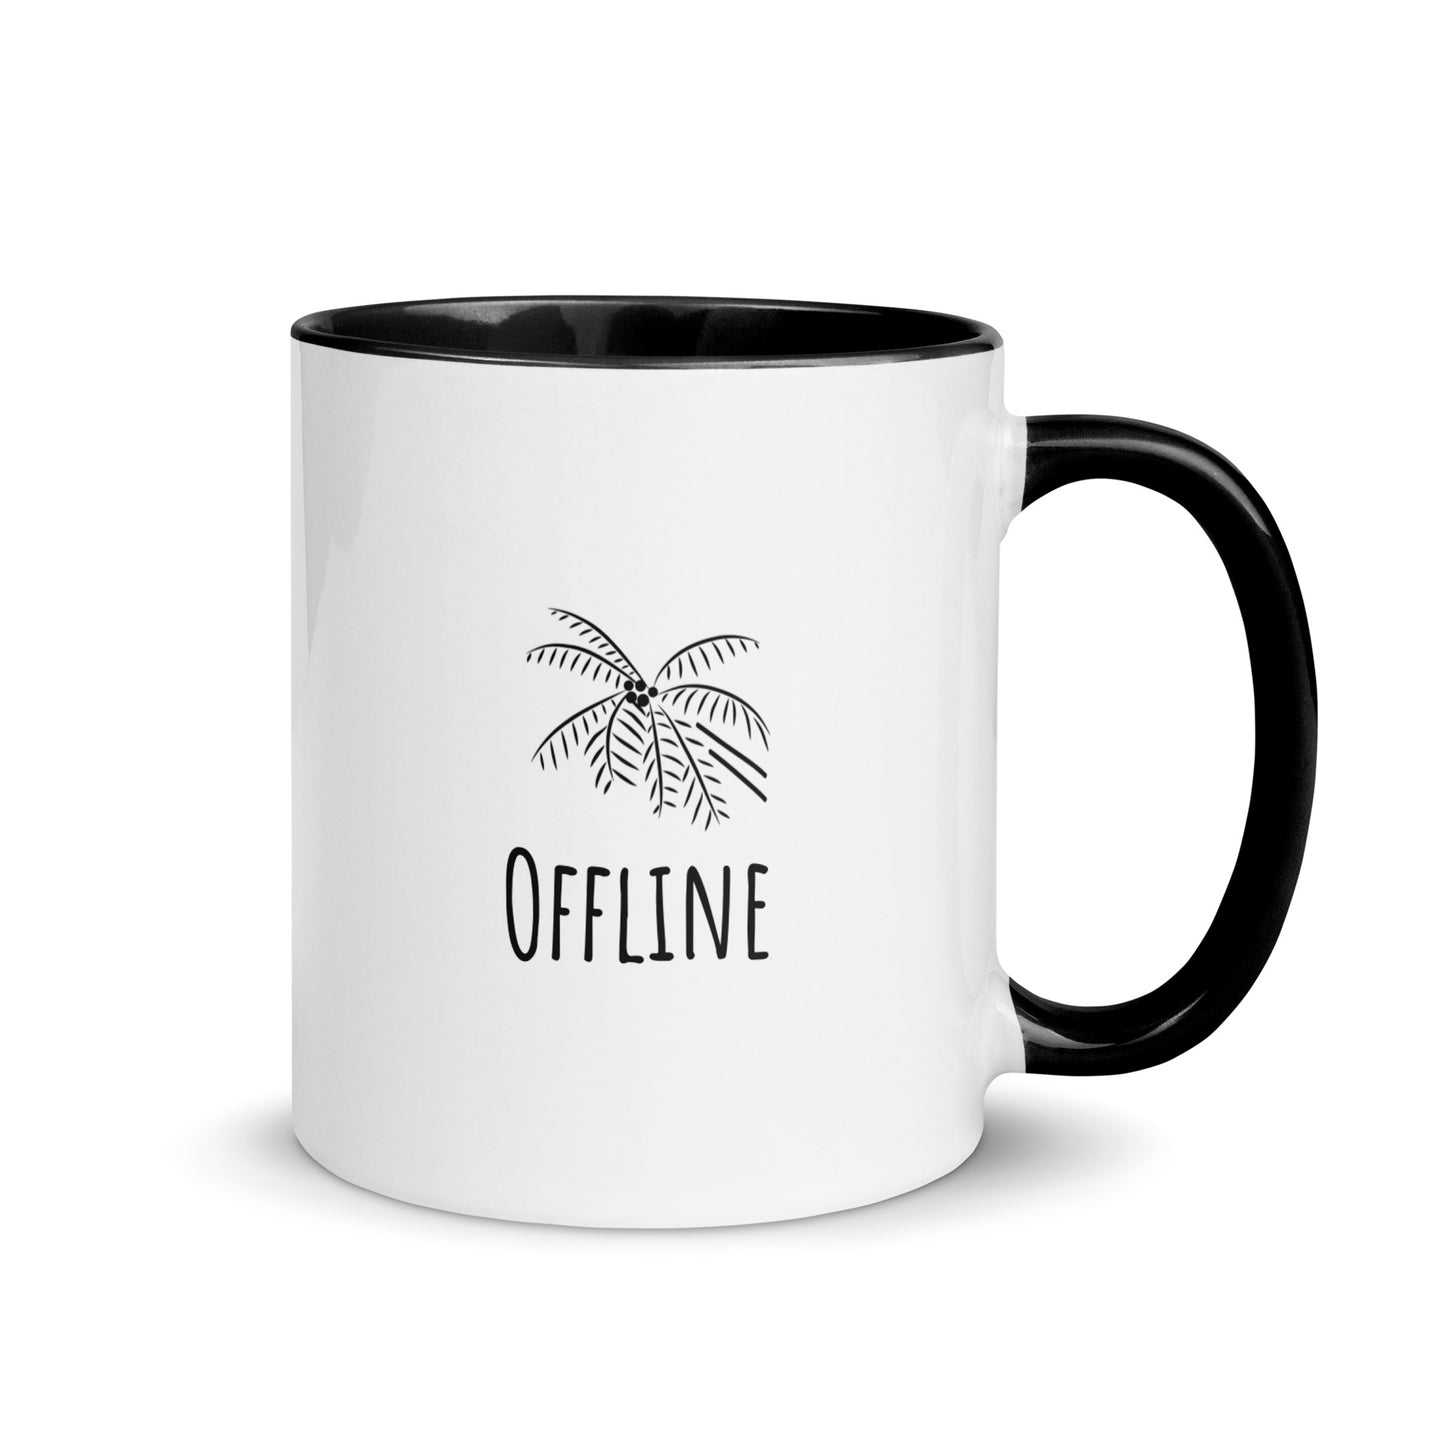 Jadenbree Offline Mug in Black